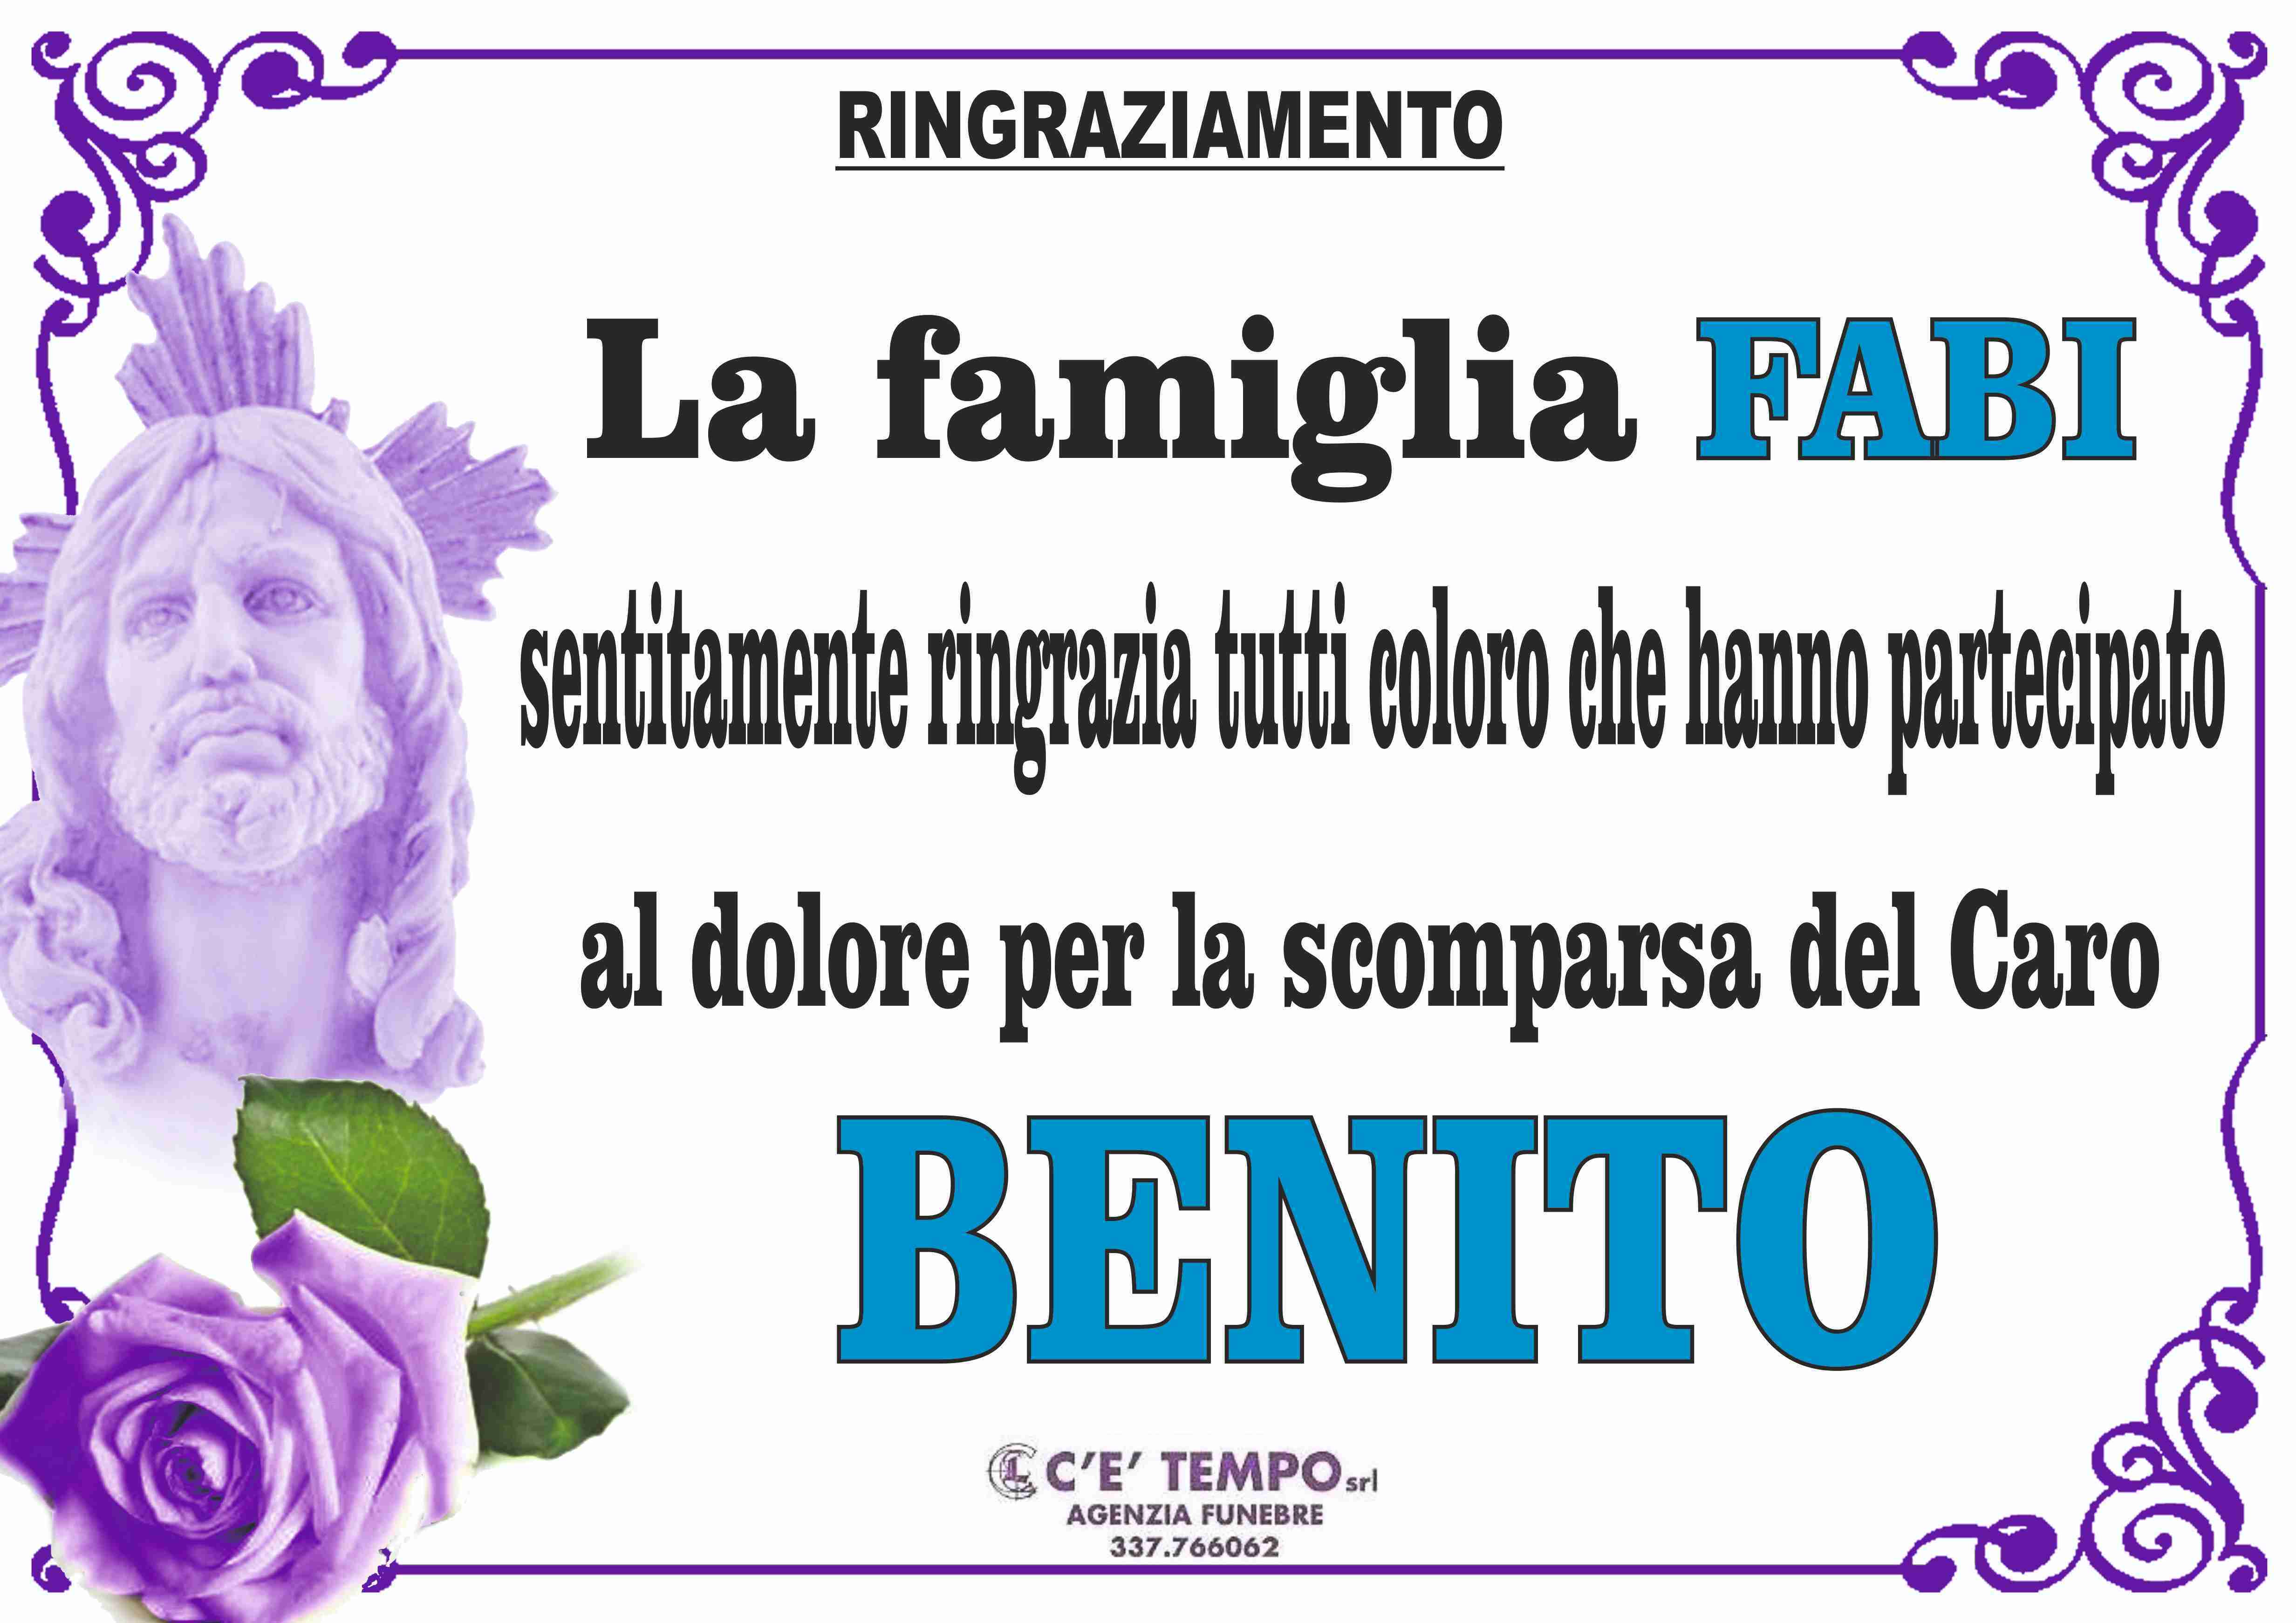 Benito Fabi